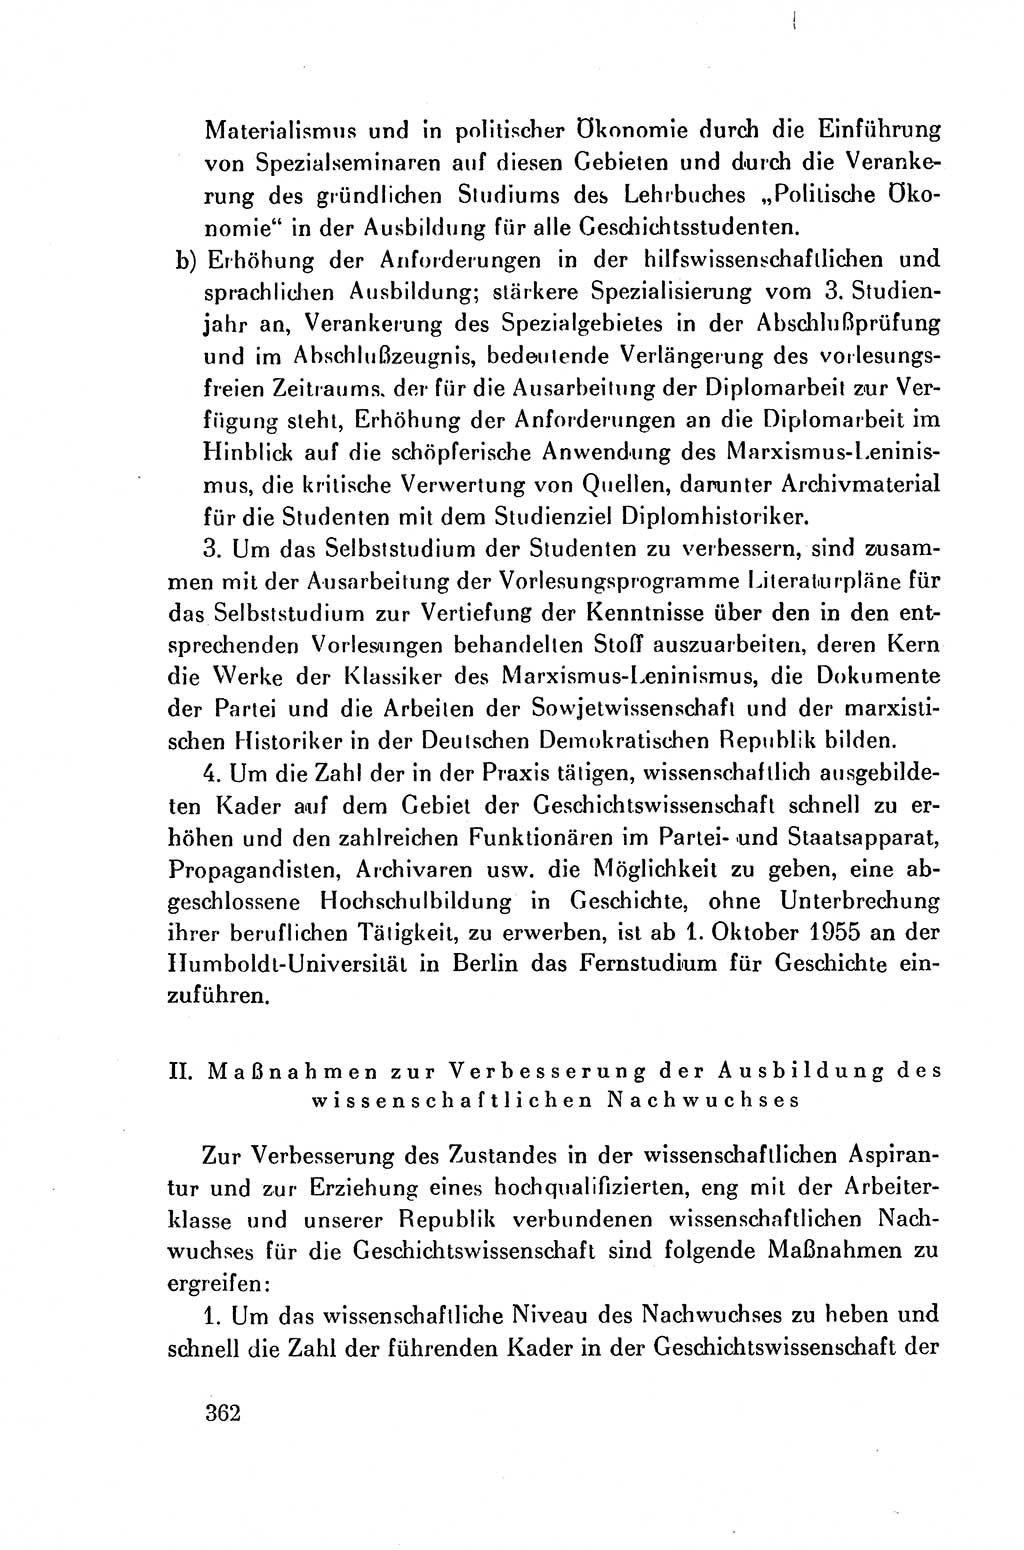 Dokumente der Sozialistischen Einheitspartei Deutschlands (SED) [Deutsche Demokratische Republik (DDR)] 1954-1955, Seite 362 (Dok. SED DDR 1954-1955, S. 362)